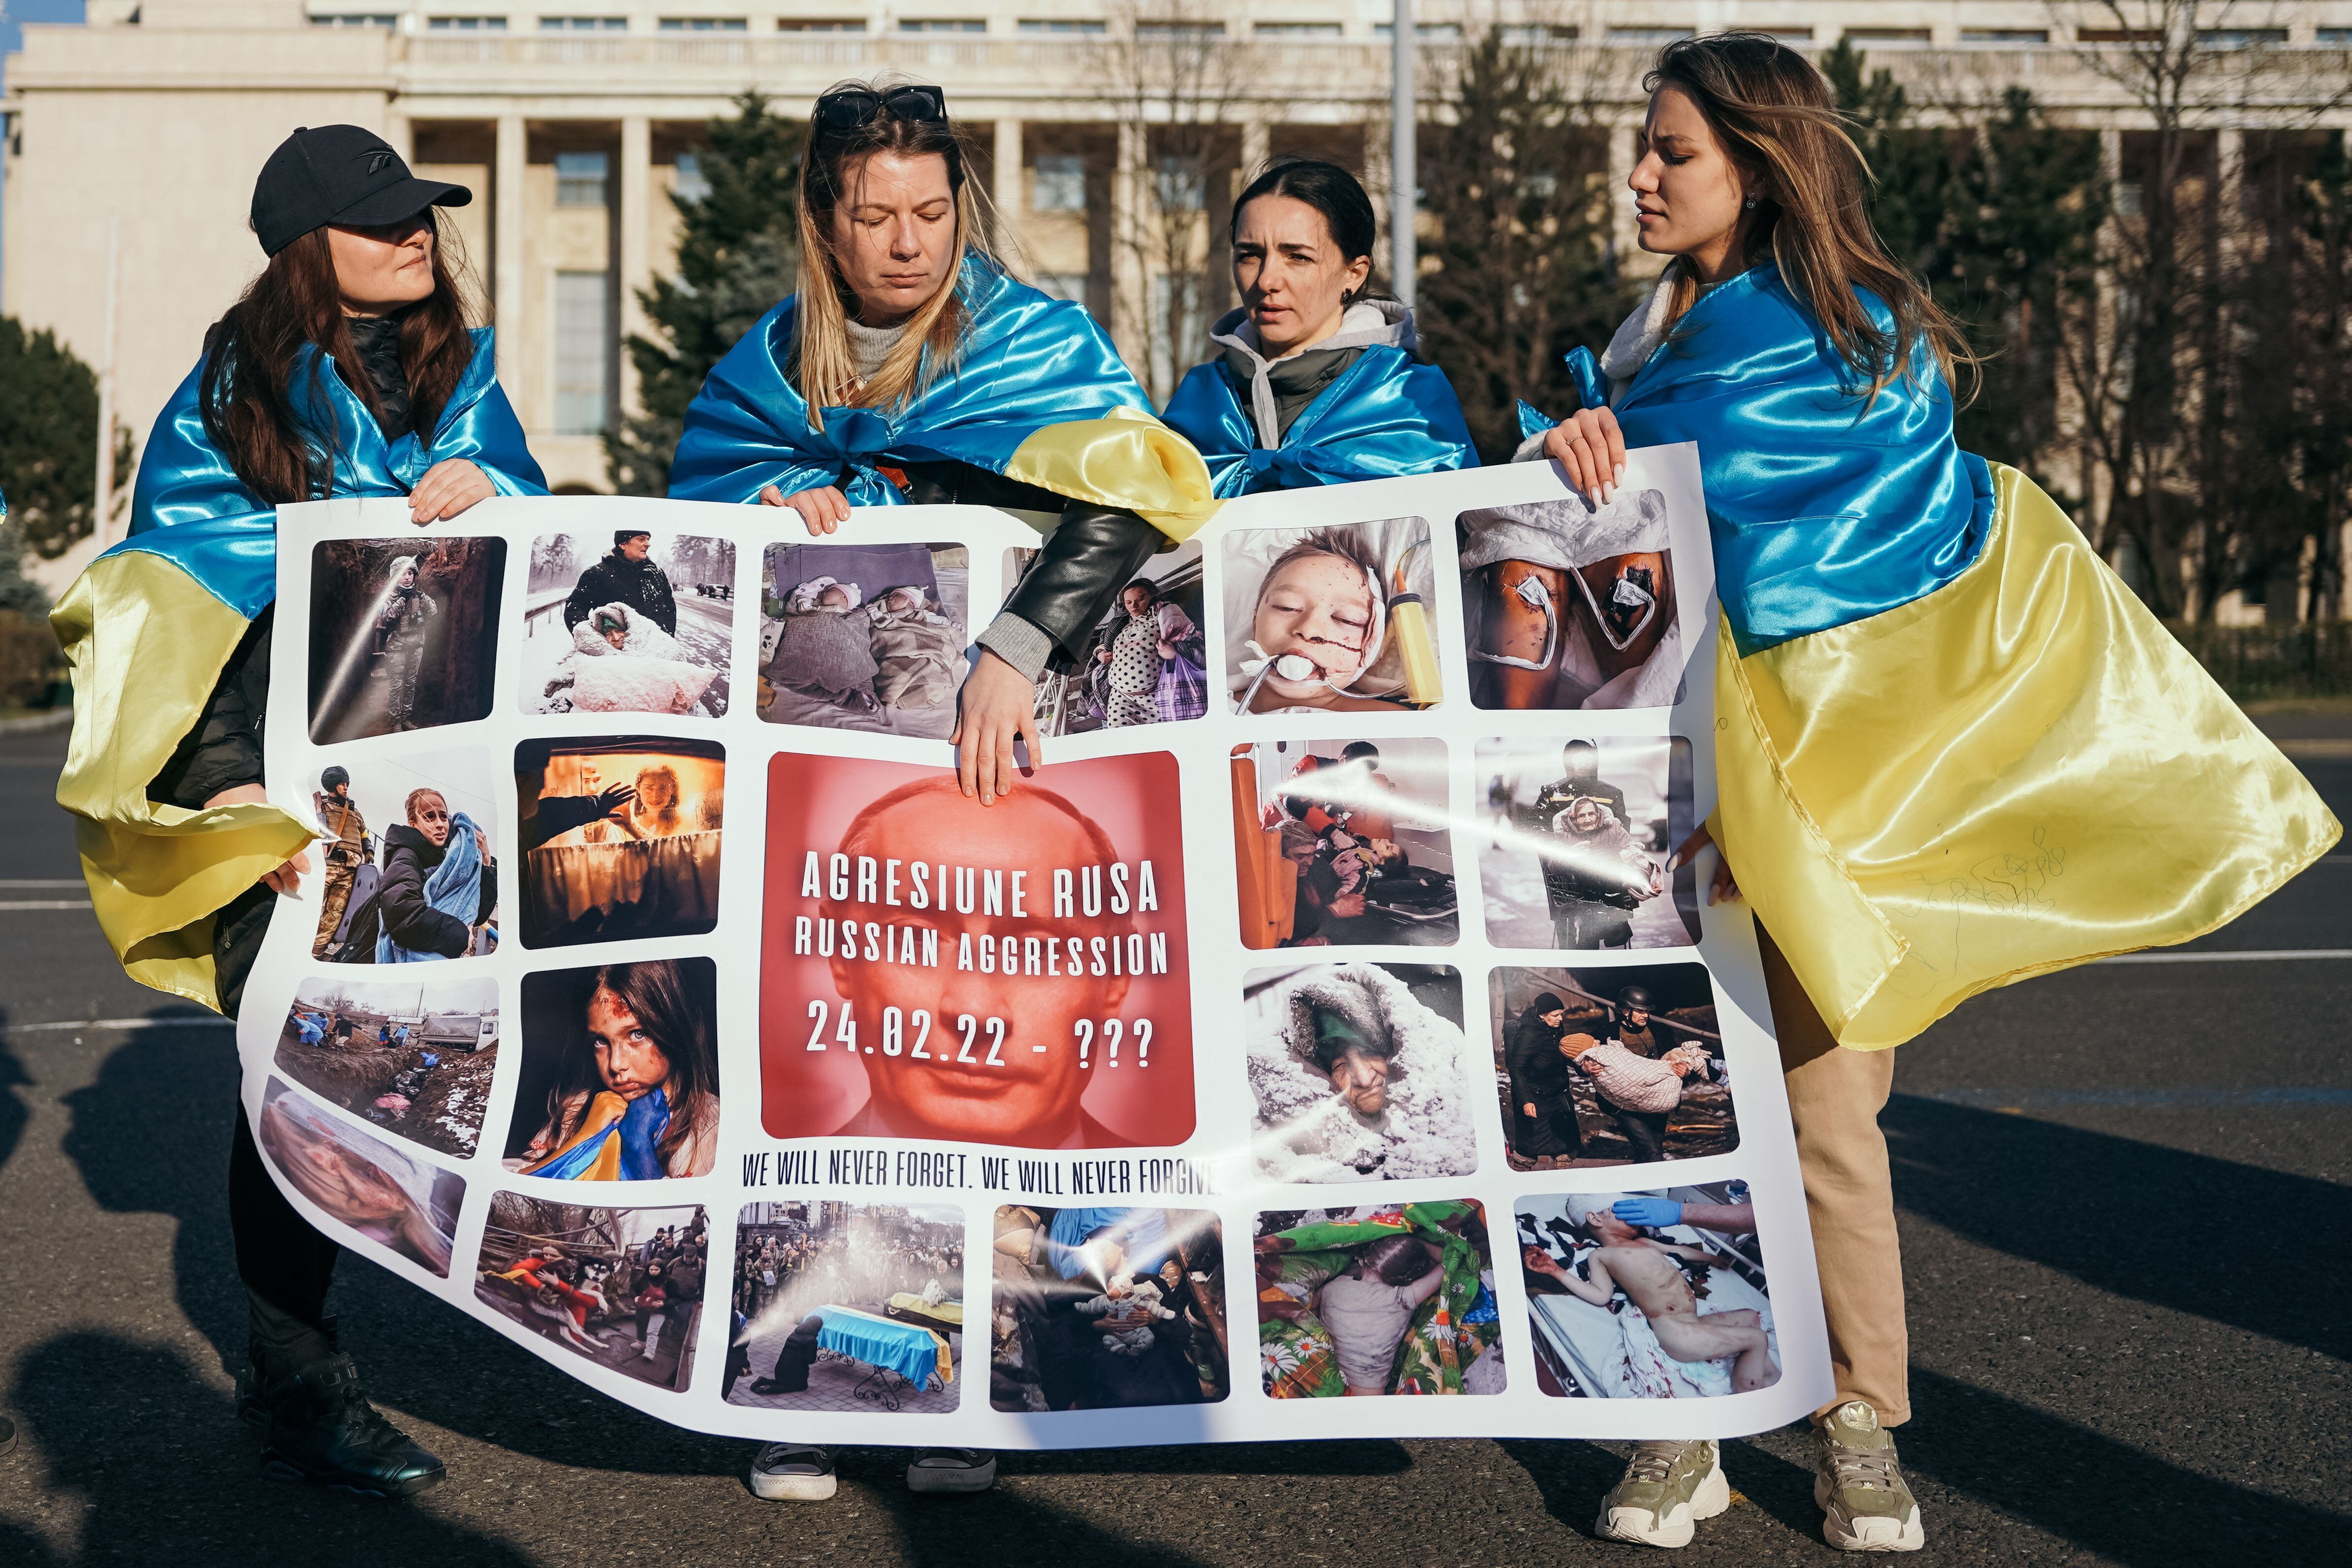 Mujeres ucranianas exhiben una pancarta con las letras que dicen "Agresión rusa - 24 de febrero - ¿hasta" y una imagen del presidente ruso, Vladimir Putin, durante una manifestación de solidaridad con Ucrania en Bucarest el 19 de marzo de 2022. Foto de Andrei PUNGOVSCHI / AFP